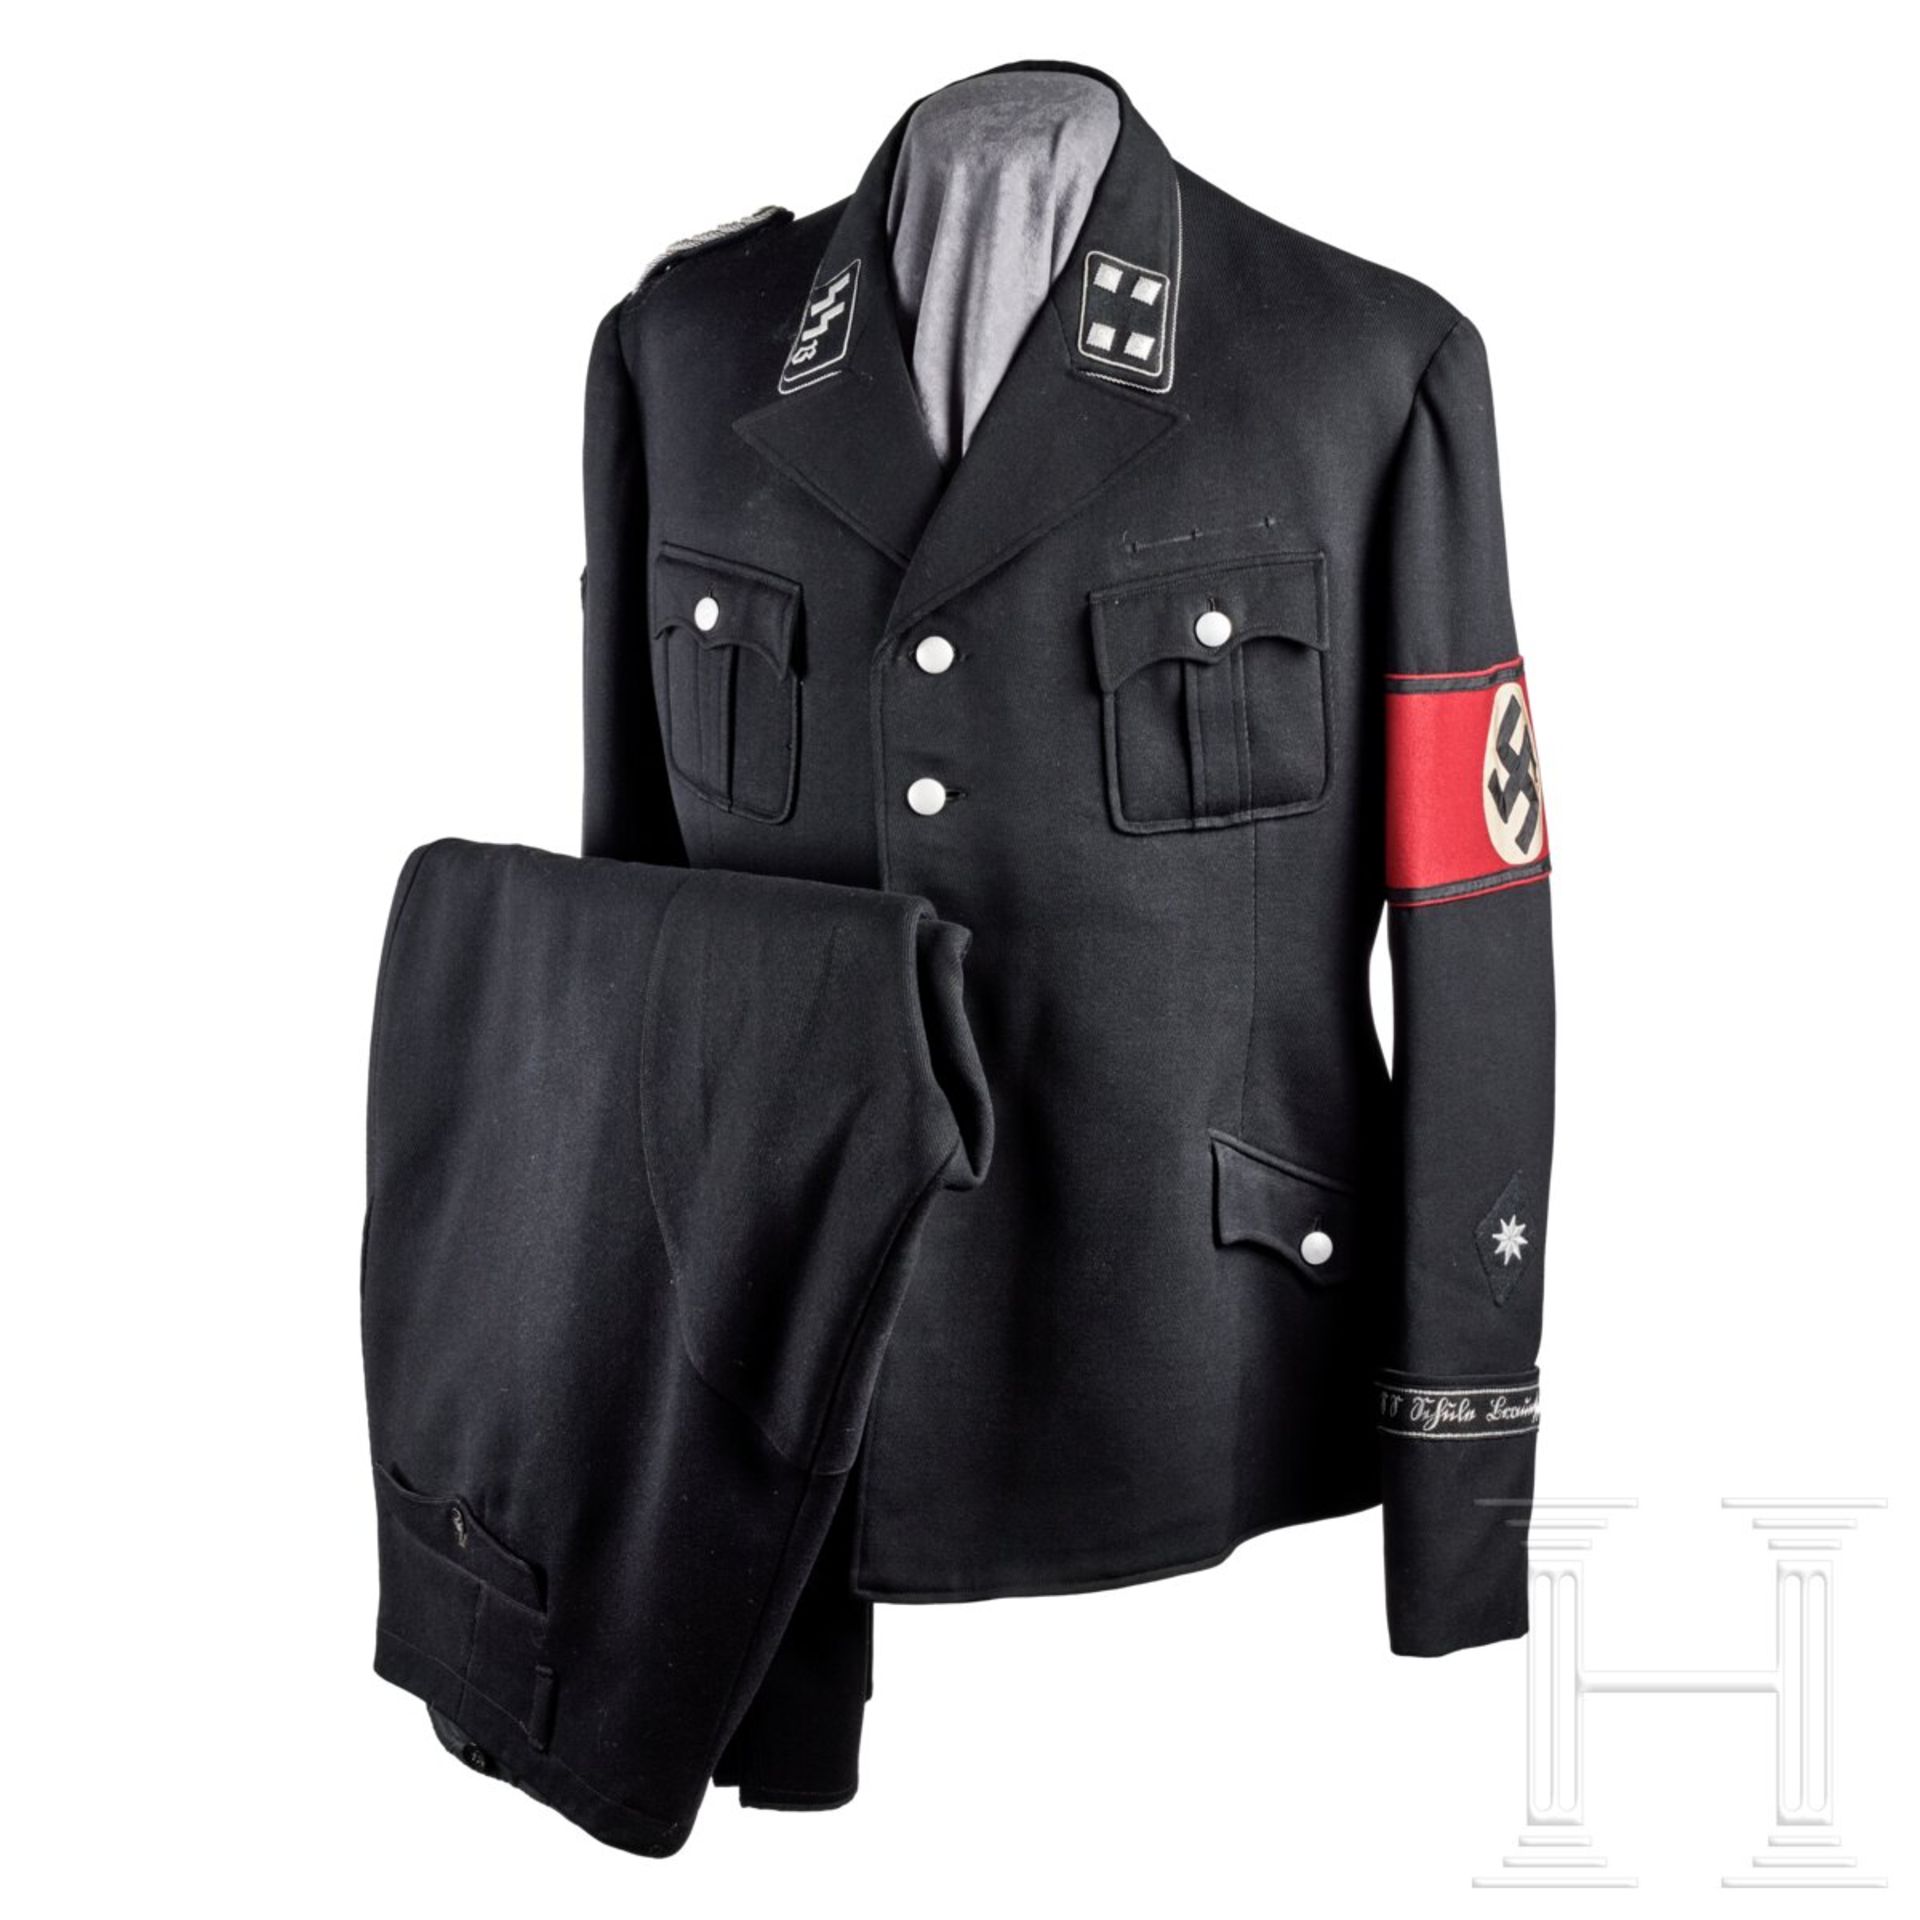 A Service Uniform for a Sturmbannführer of SS Junkerschule Braunschweig